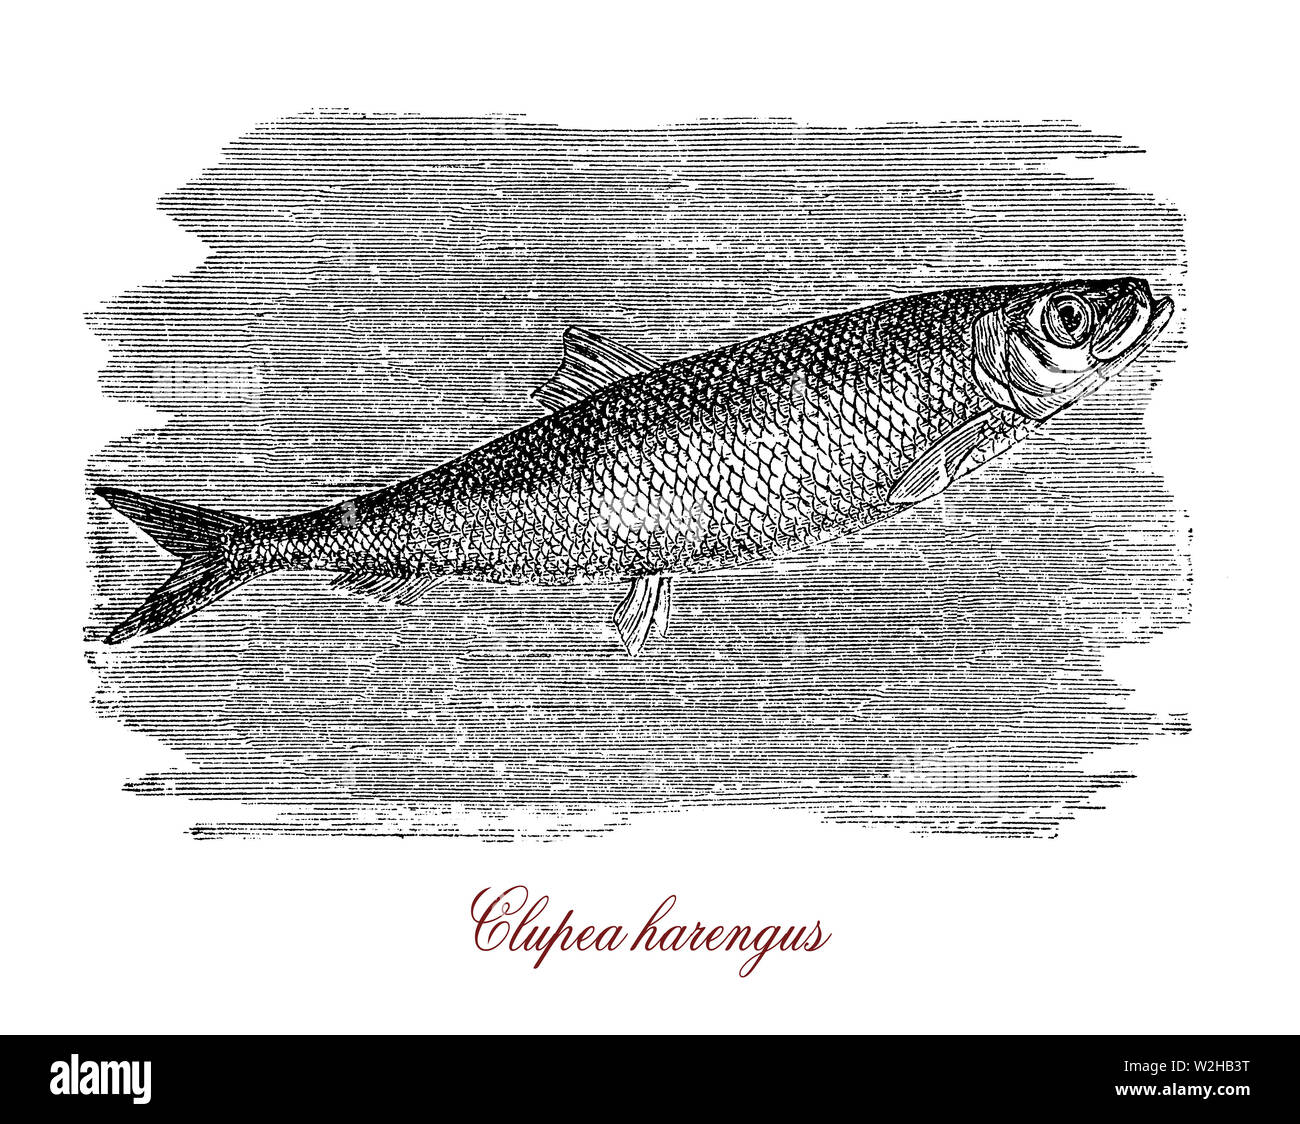 Atlantischer Hering oder Clupea harengus ist eine der häufigsten Arten von Fischen schwimmen mit konstanter Geschwindigkeit in großen Schulen in den Atlantischen Ozean, wichtig für kommerzielle Fischerei Stockfoto